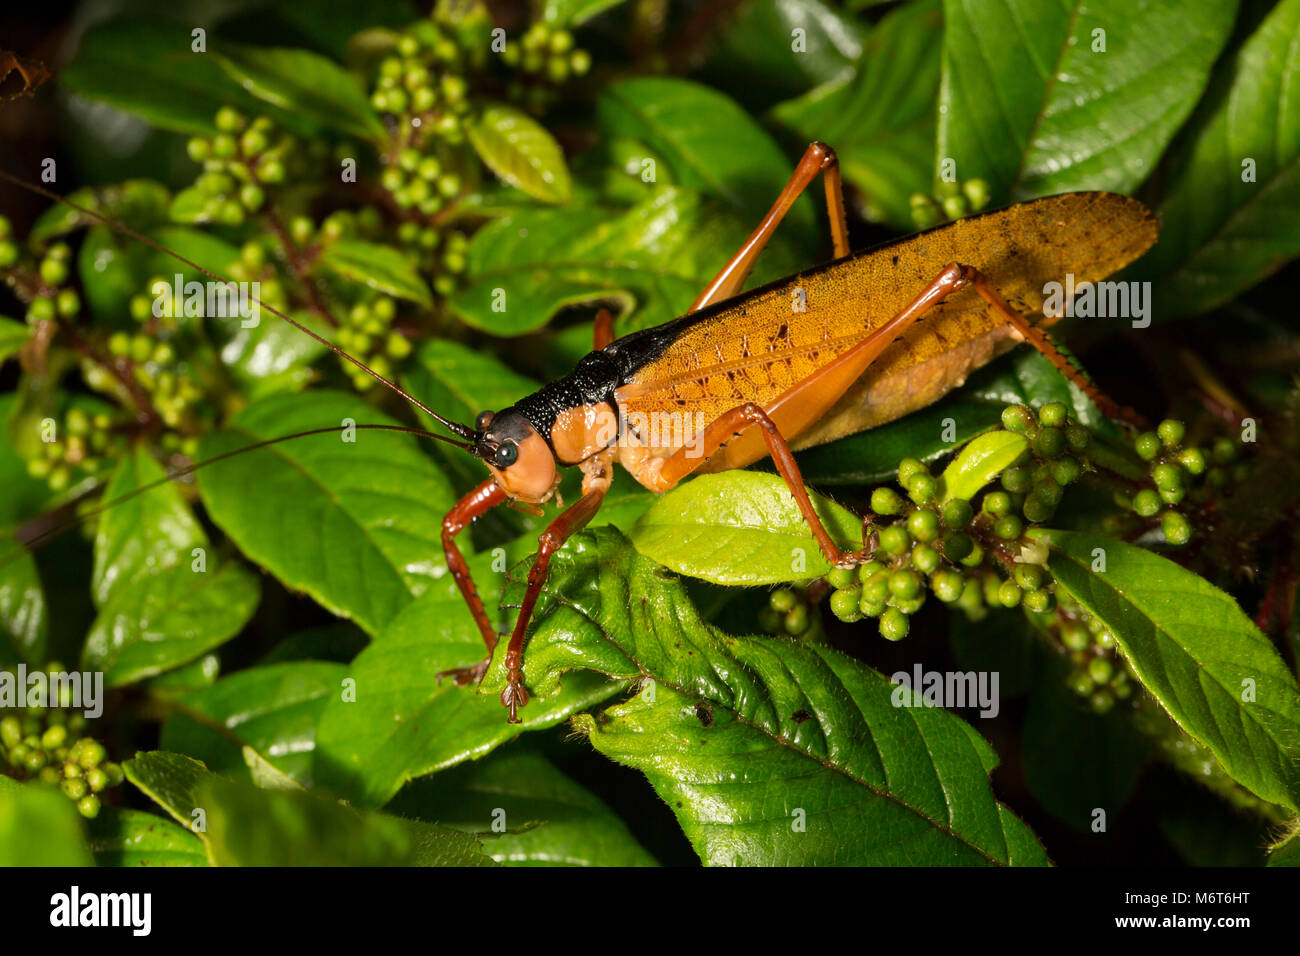 Bush Cricket oder katydid, im Dschungel bei Nacht fotografiert. Bakhuis, Suriname, Südamerika Stockfoto